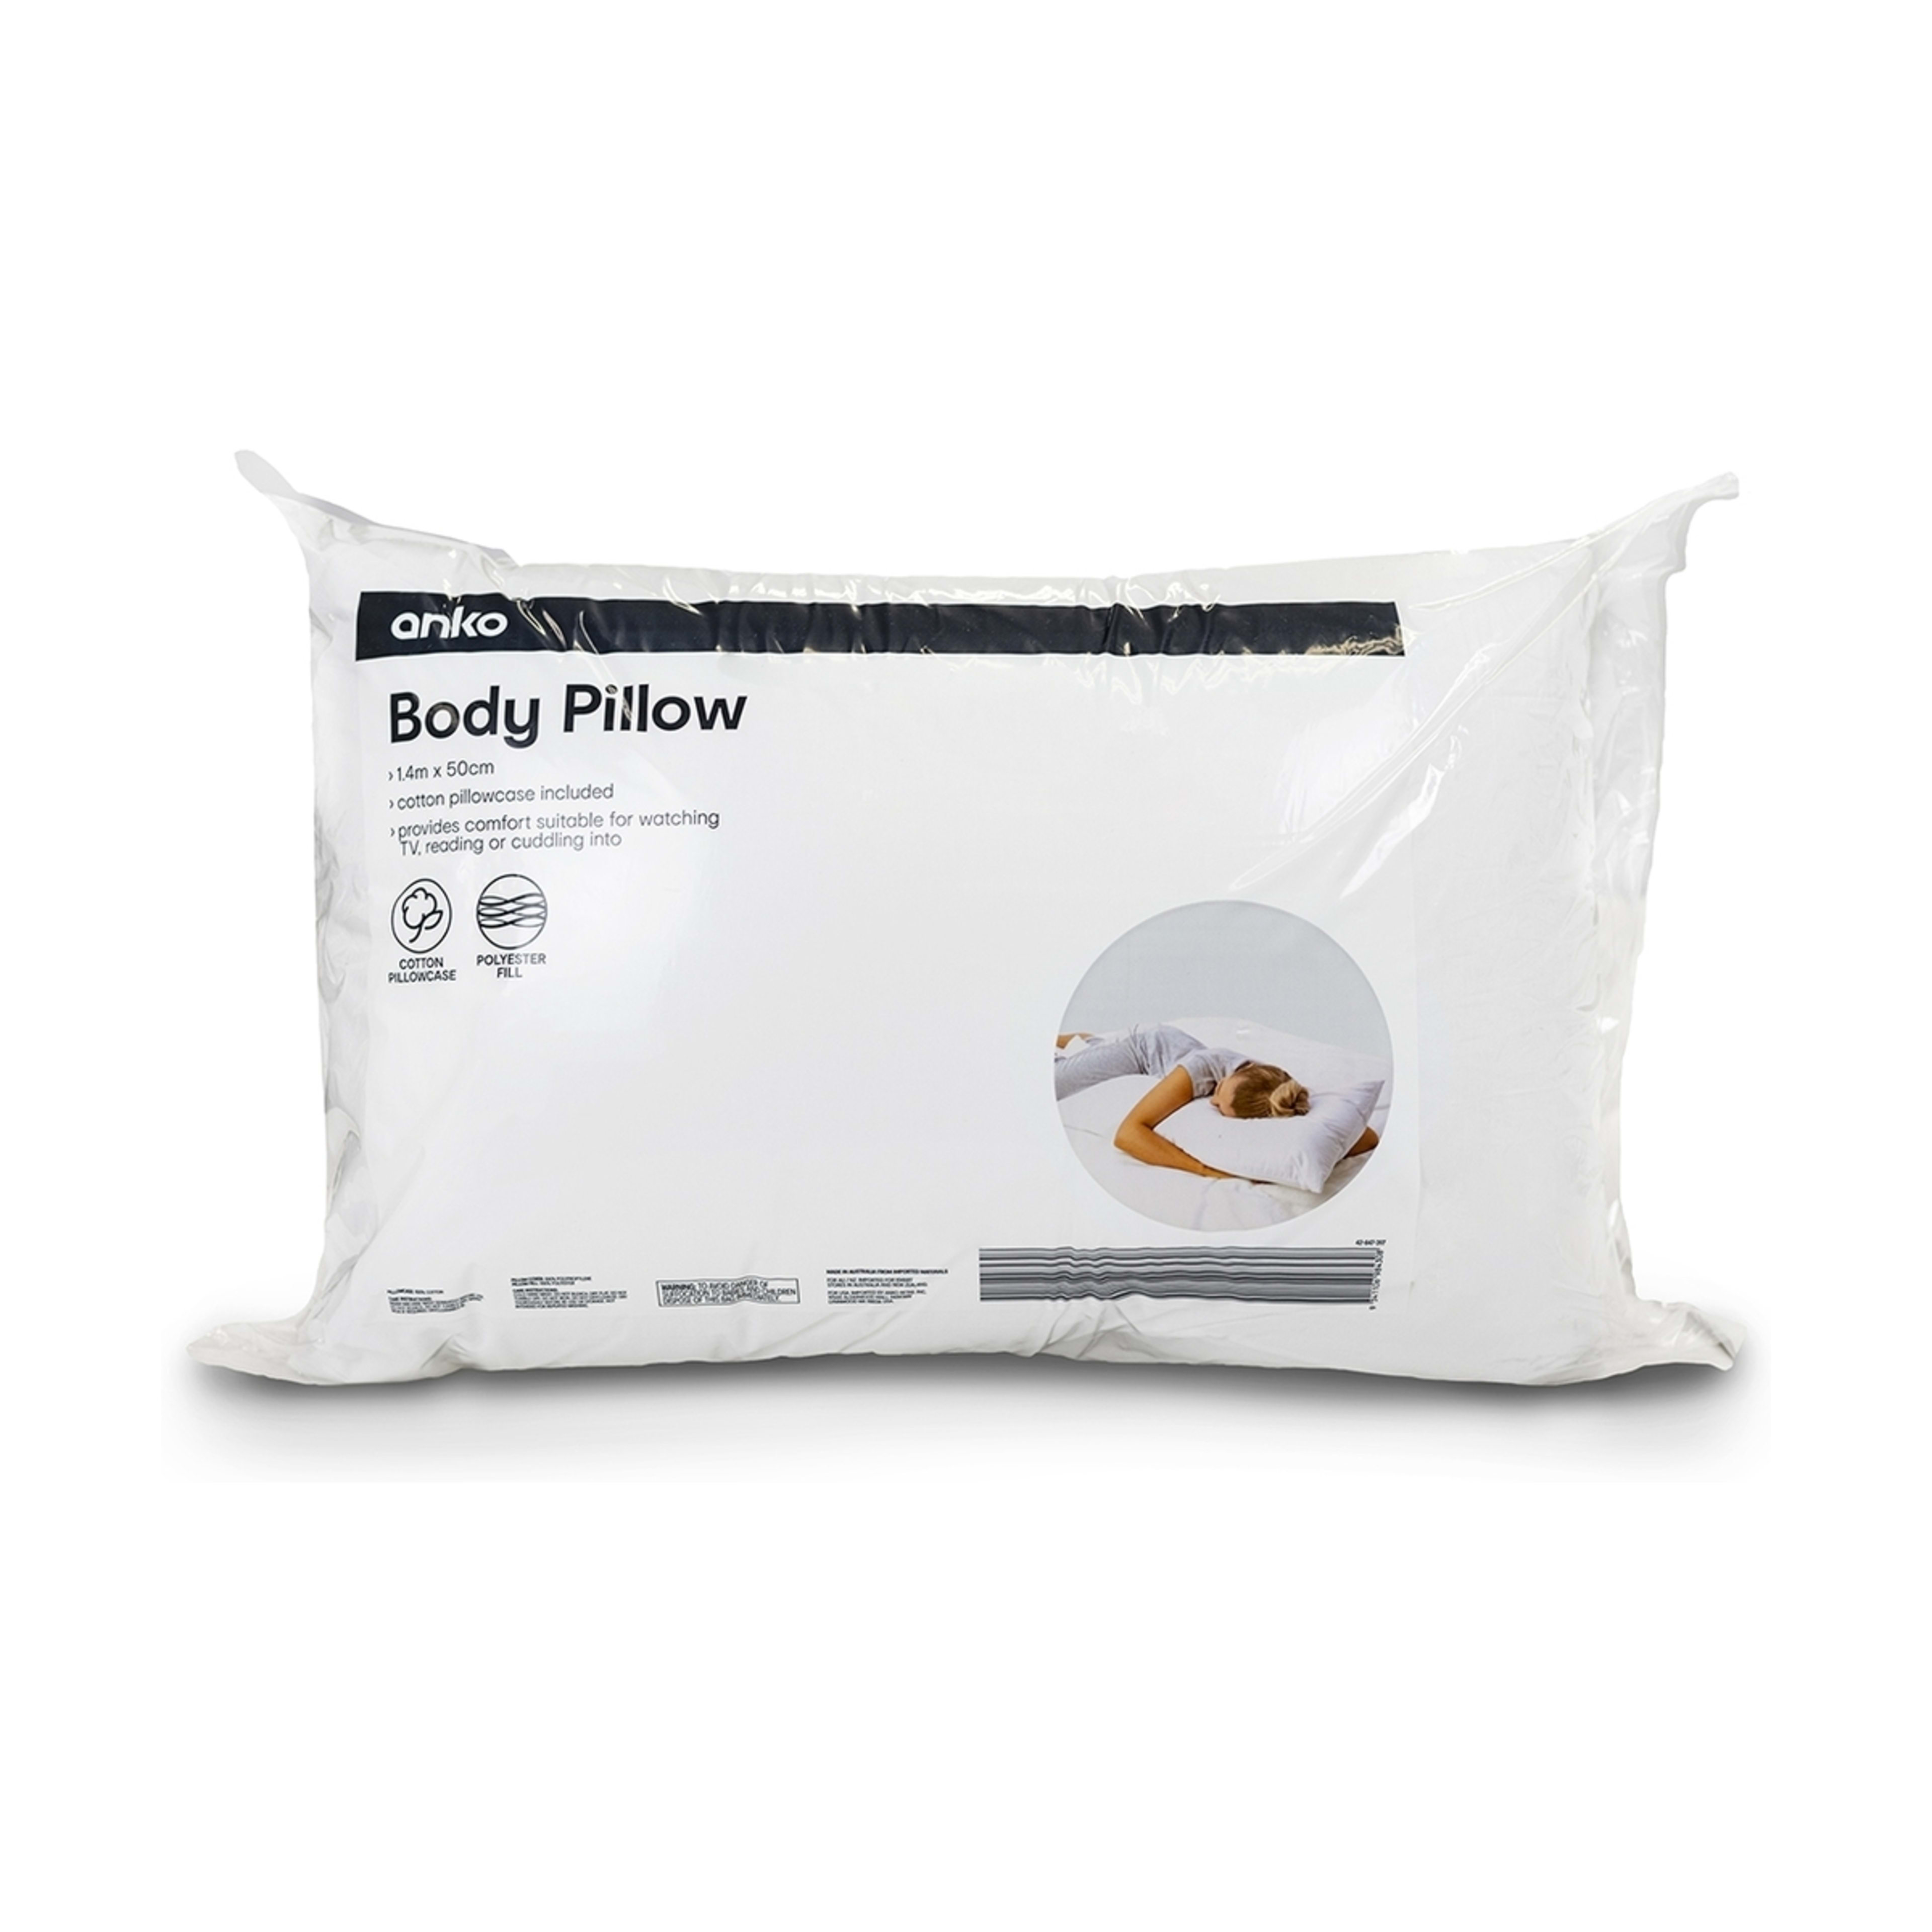 Body Pillow - Kmart